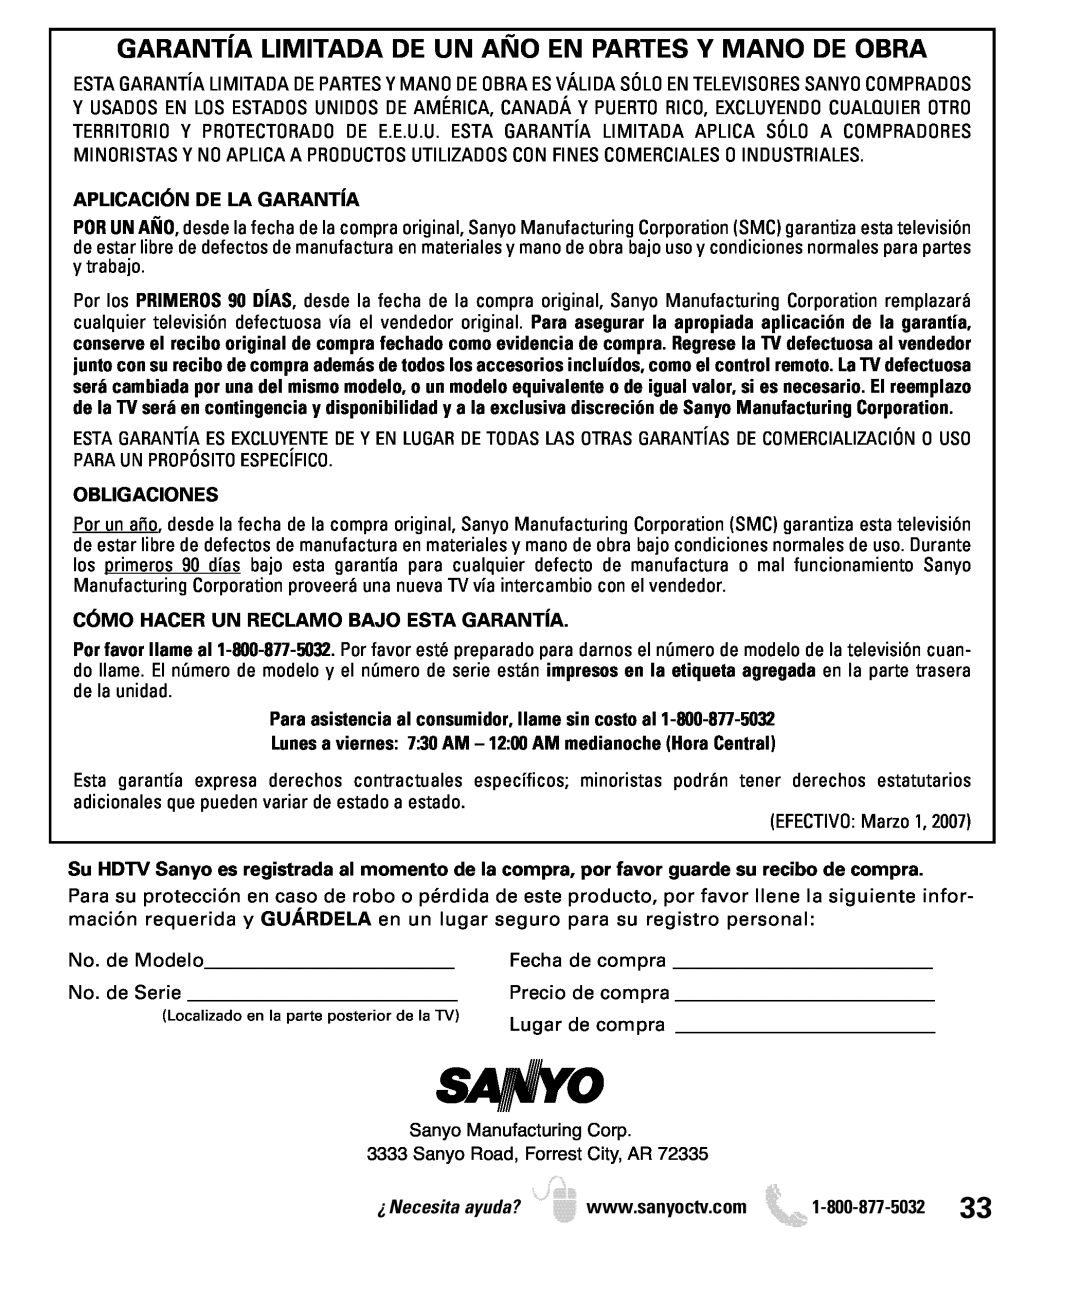 Sanyo DP19649, DP26649 Garantía Limitada De Un Año En Partes Y Mano De Obra, Aplicación De La Garantía, Obligaciones 